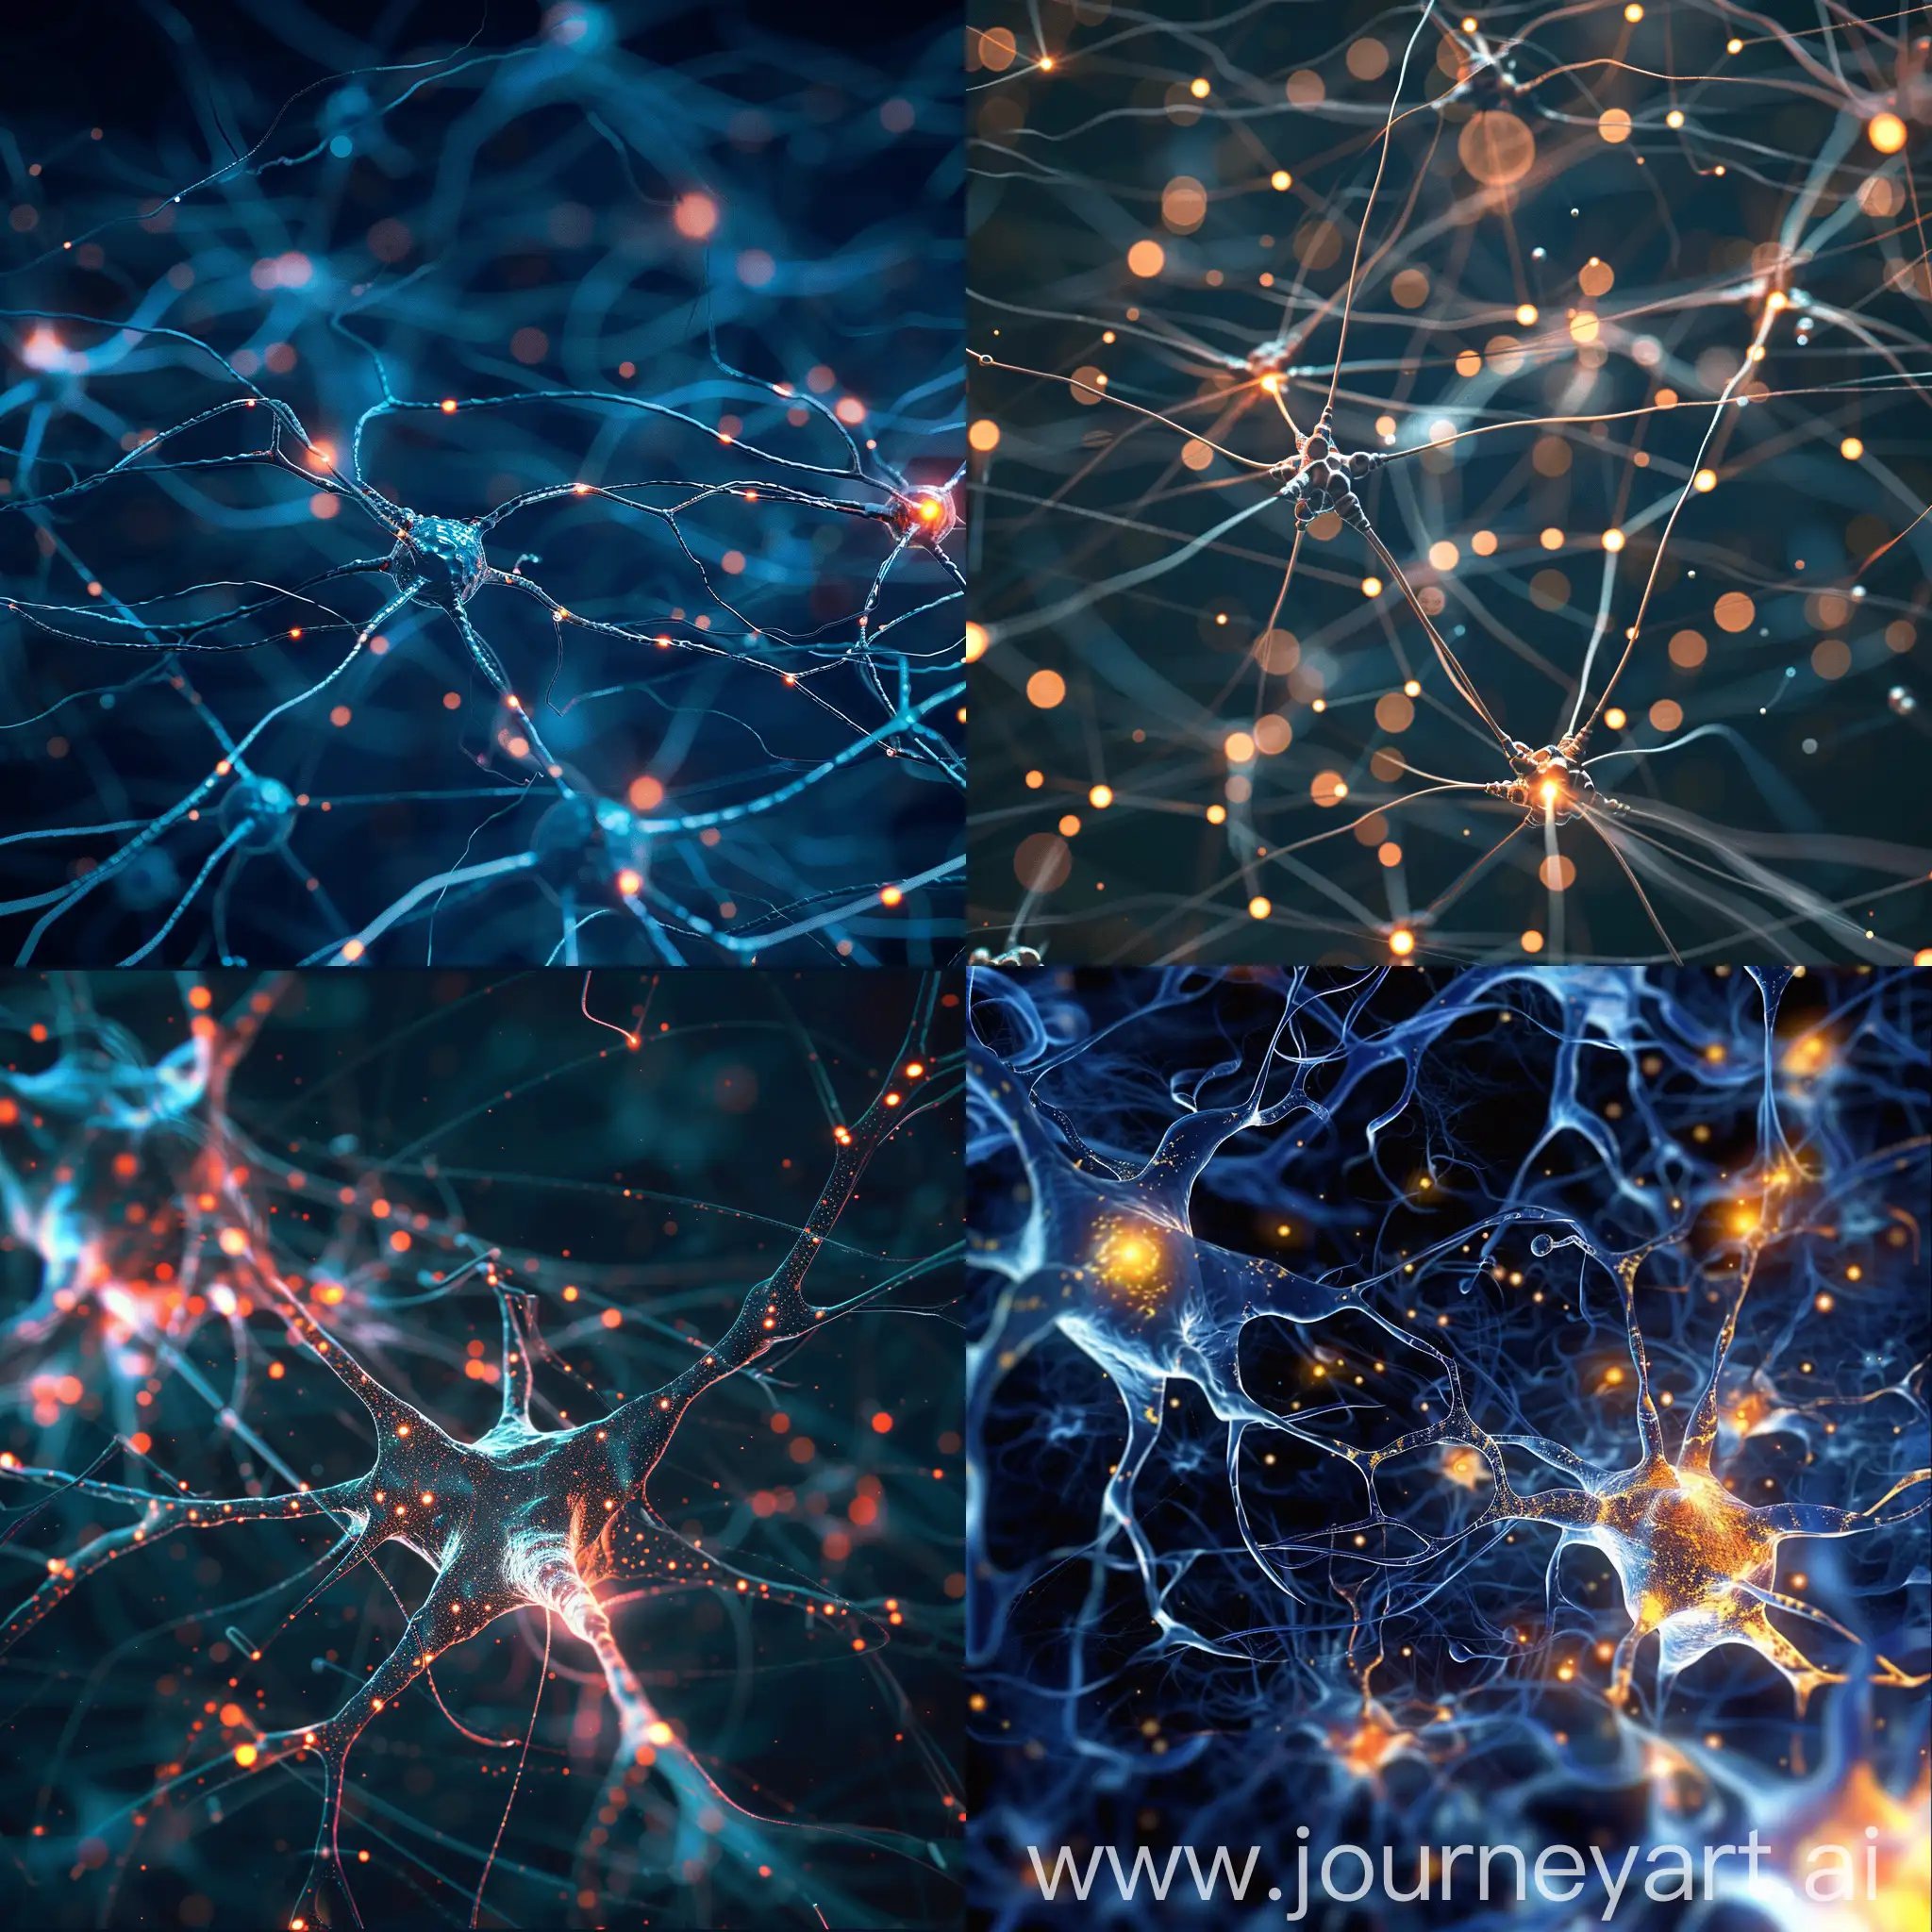 Futuristic-Neural-Network-Landscape-in-Version-6-Aspect-Ratio-11